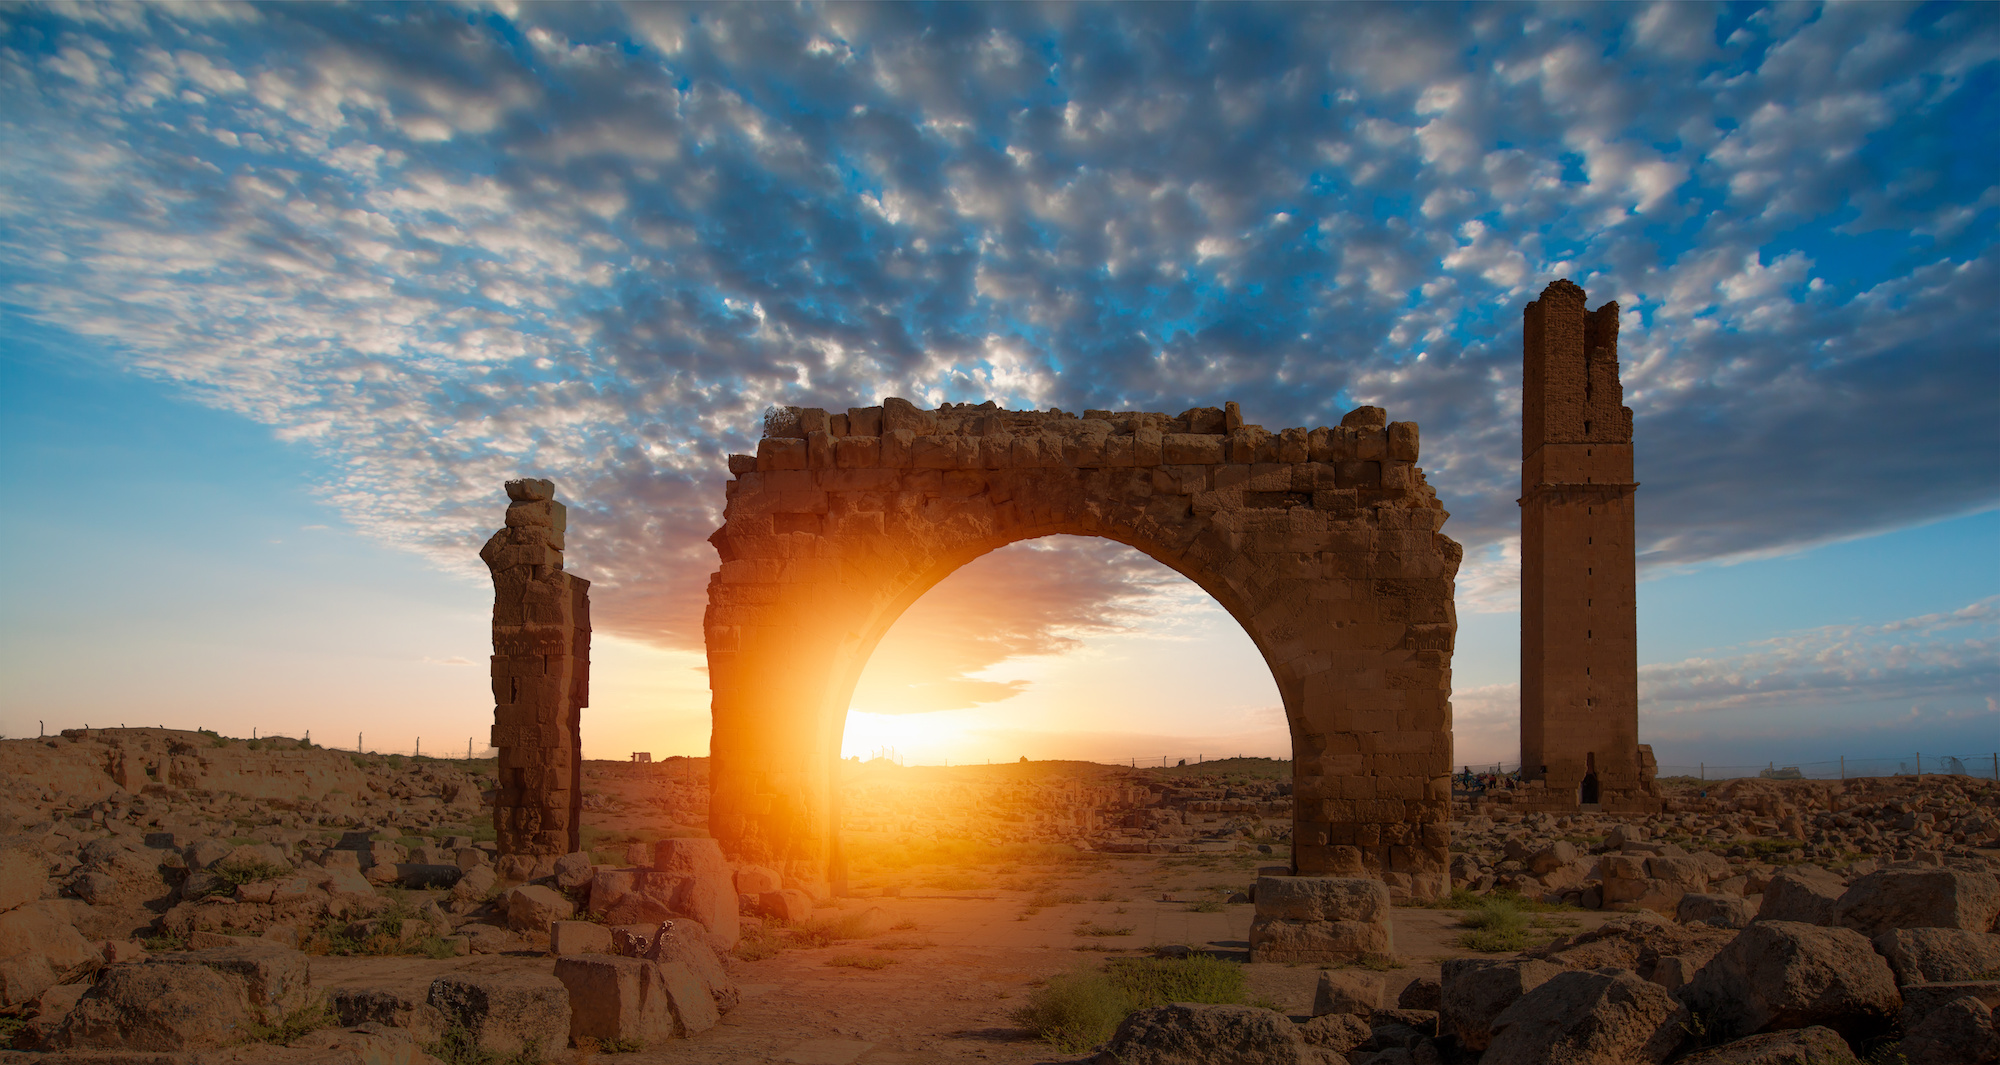 L'établissement des premières cités, en Mésopotamie, aurait été accompagné par une période de forte violence. © muratart, Adobe Stock